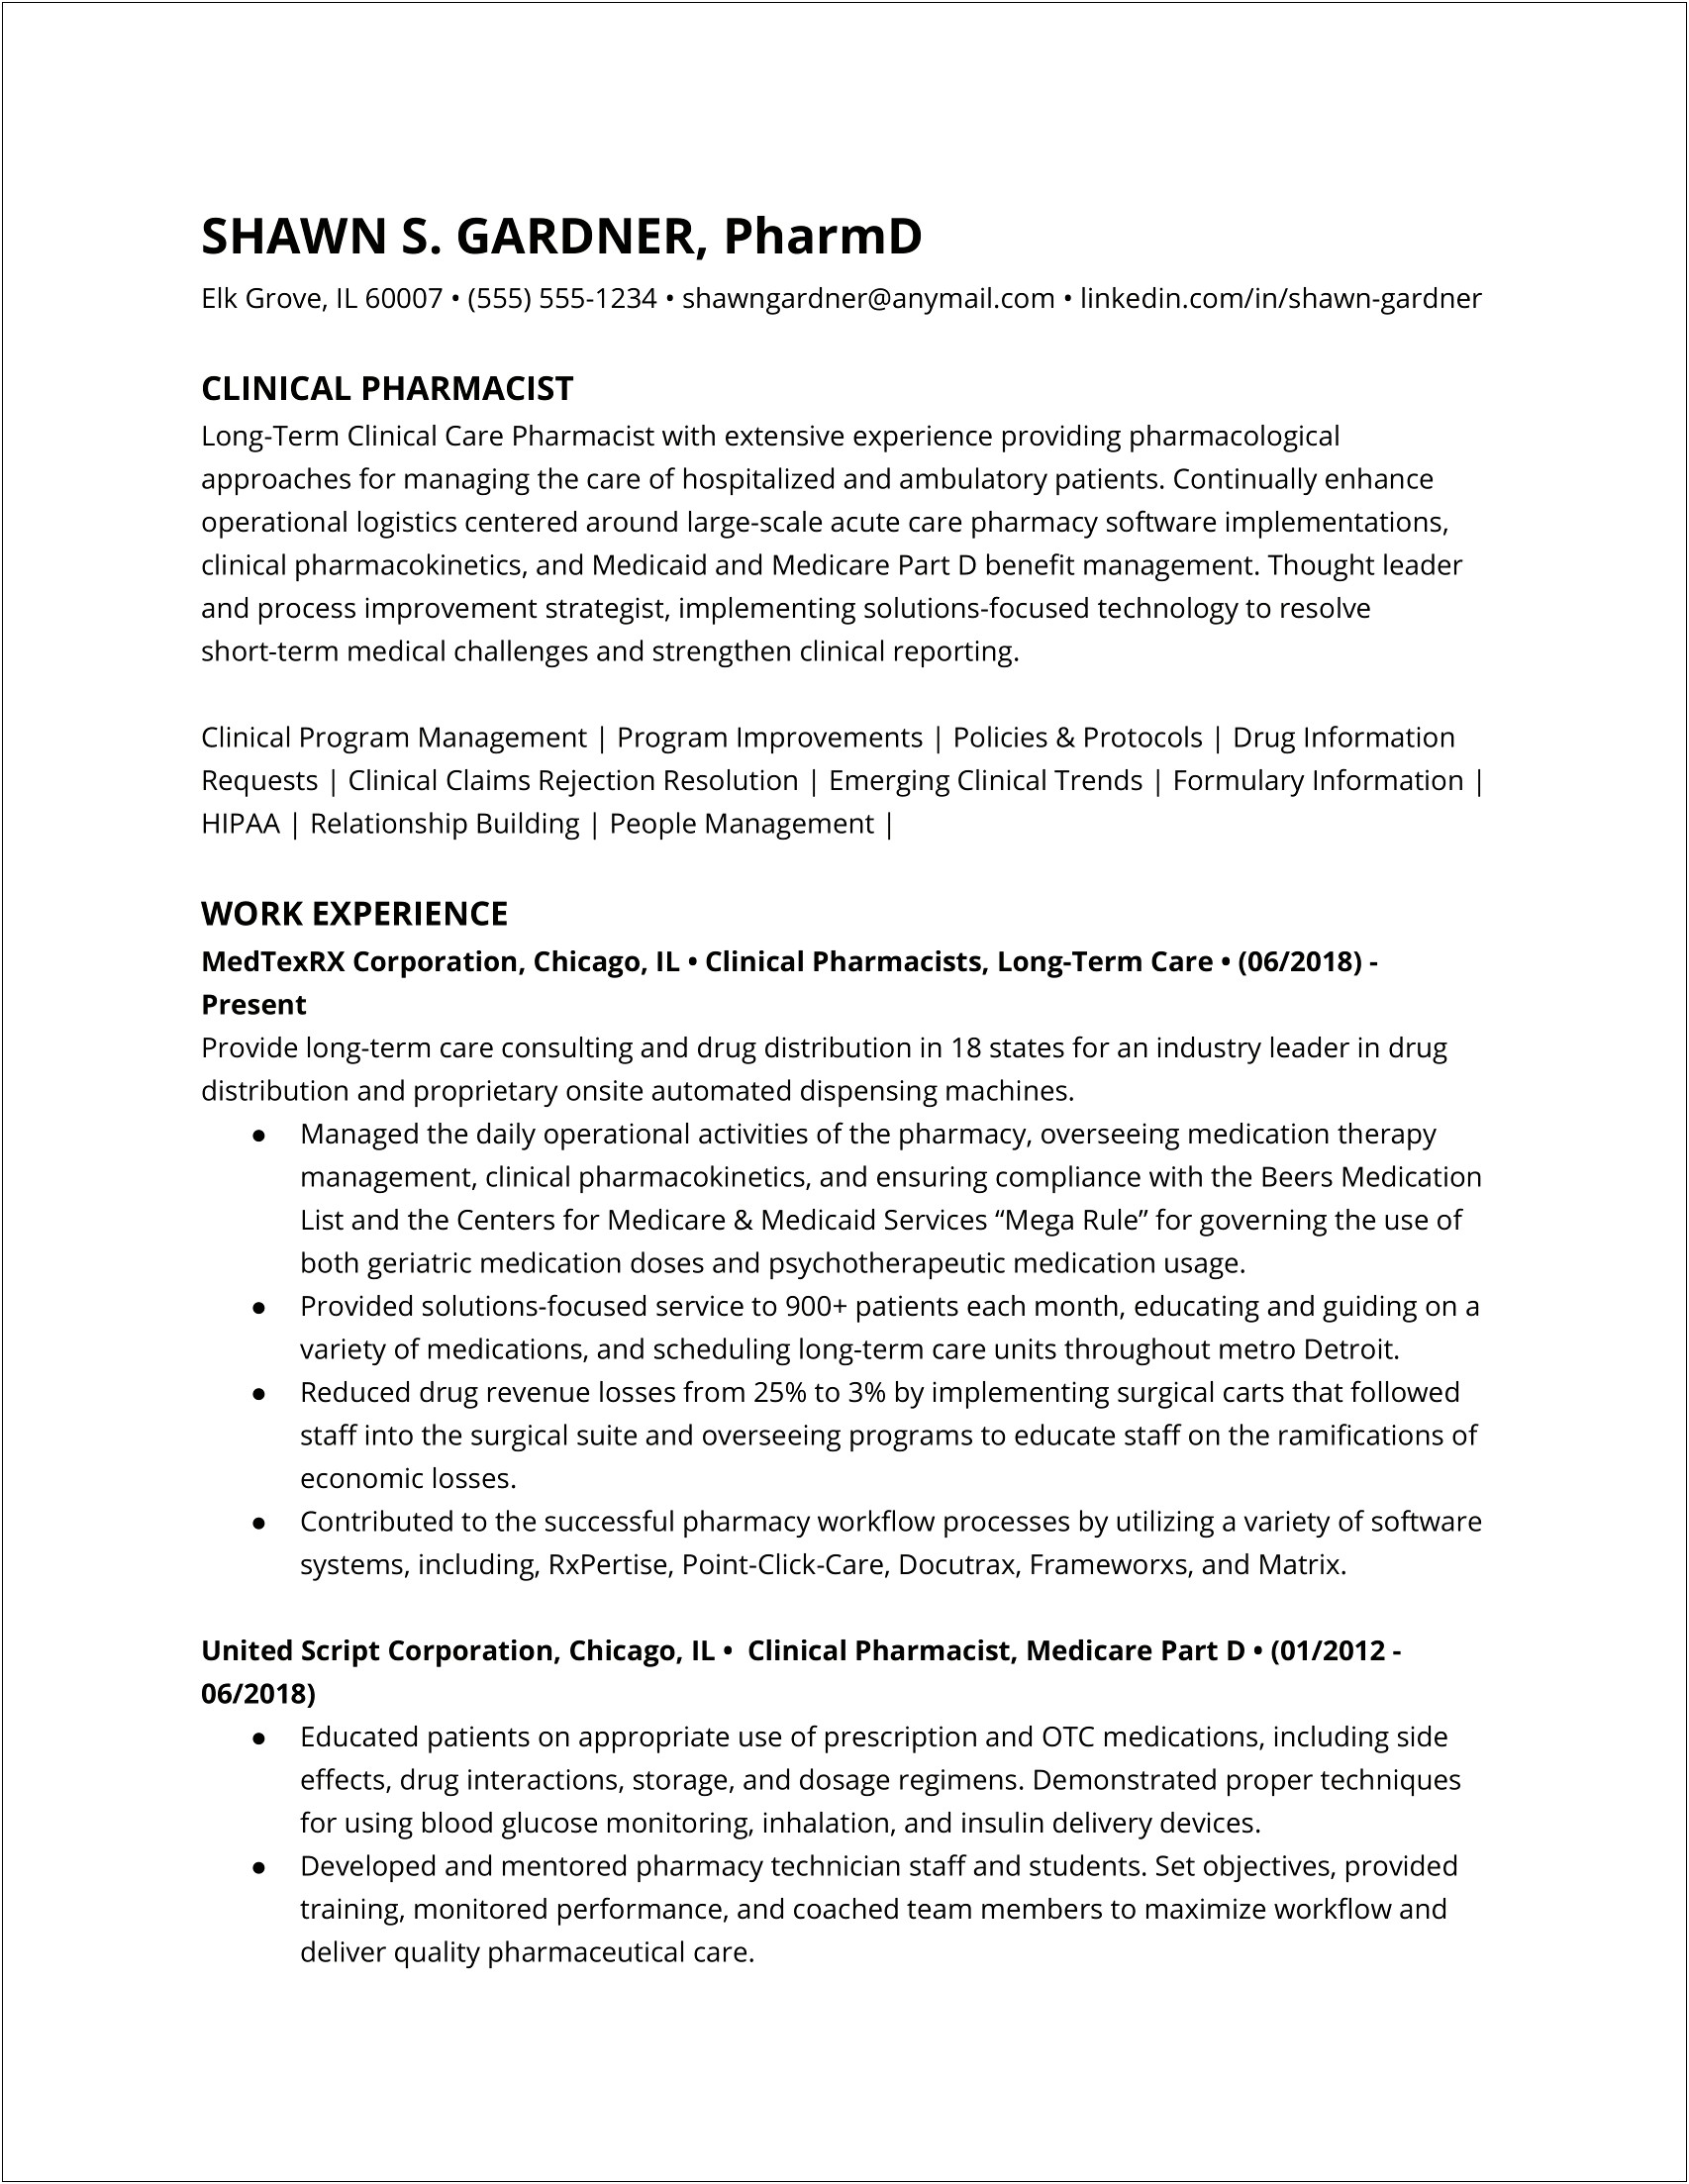 Resume Skills List For Pharmacy Technician